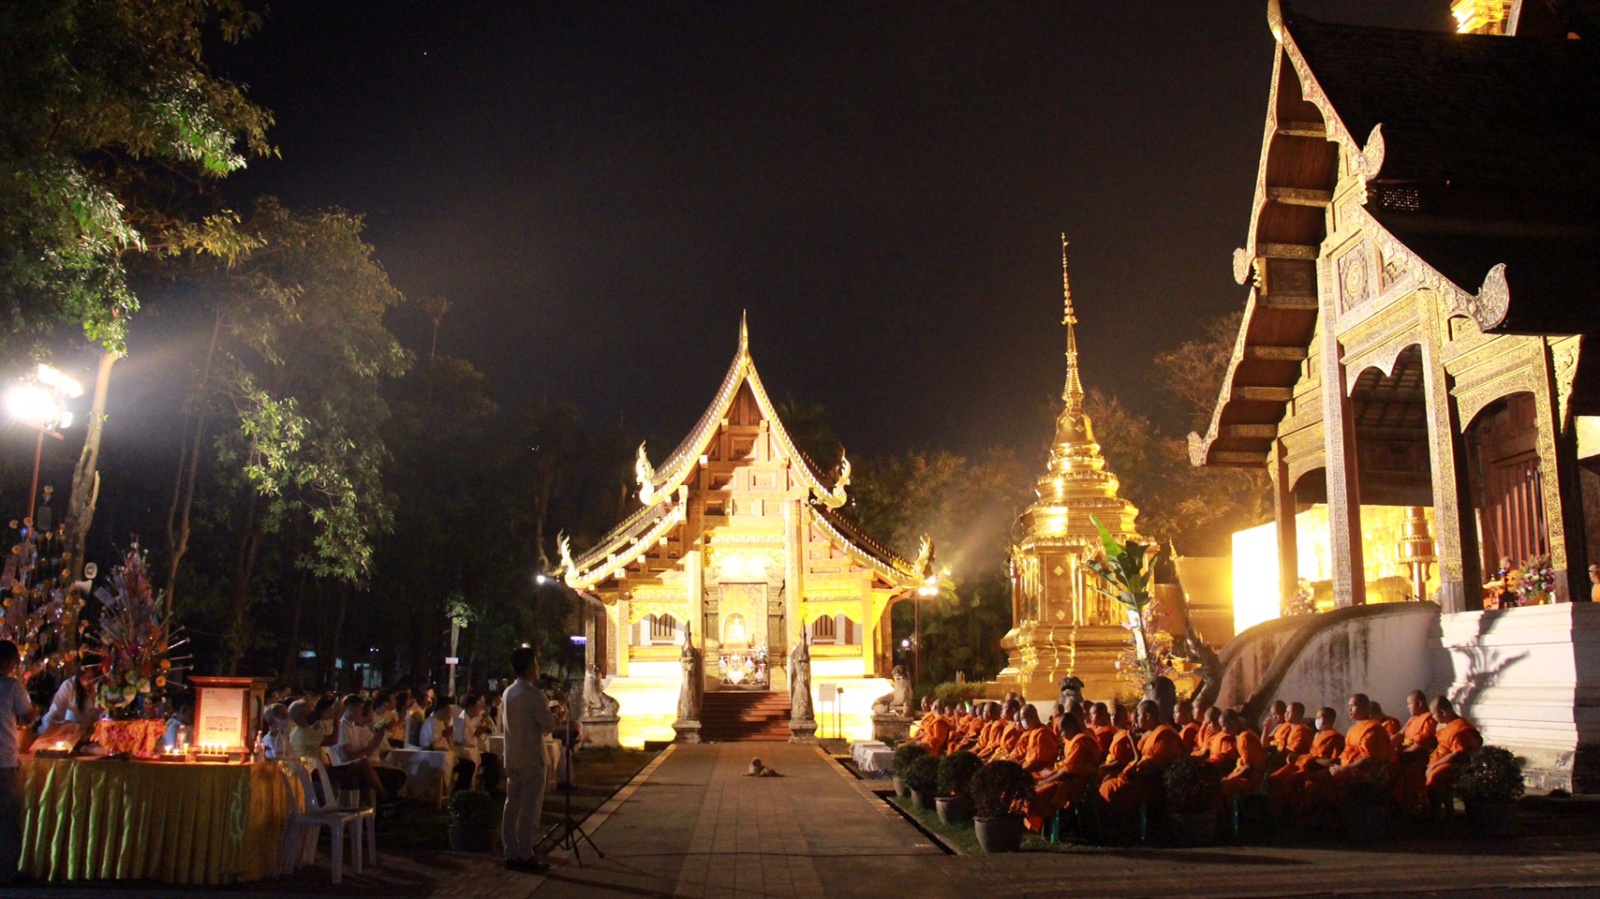 จังหวัดเชียงใหม่ จัดงานสัปดาห์ส่งเสริมการเผยแผ่พระพุทธศาสนา เนื่องในเทศกาลวันมาฆบูชา 28 กุมภาพันธ์-6 มีนาคม นี้